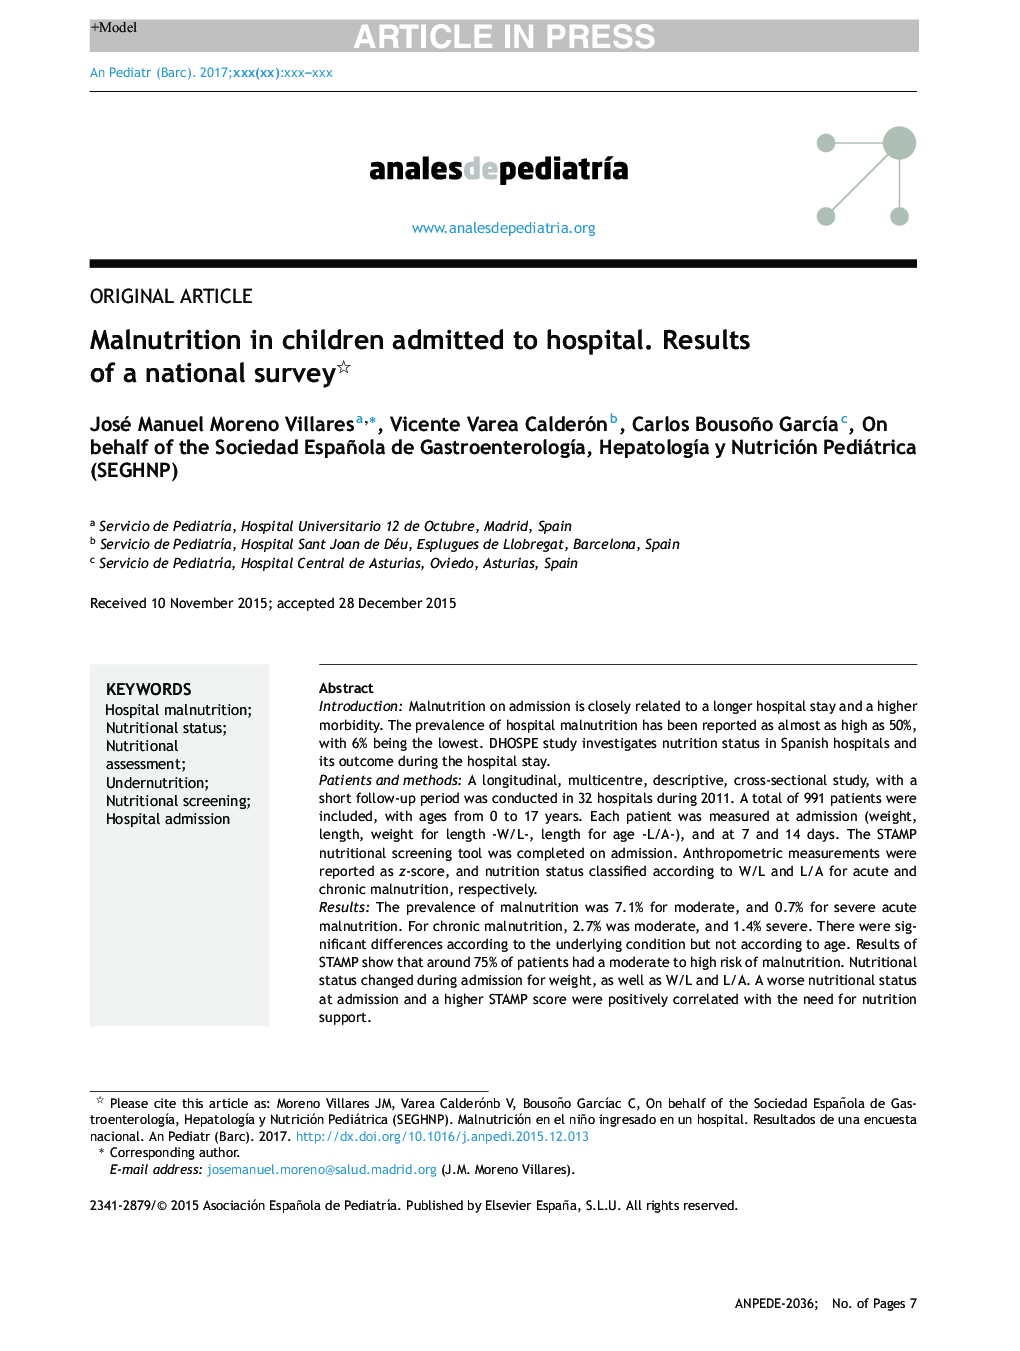 سوء تغذیه در کودکان بستری شده در بیمارستان نتایج یک نظرسنجی ملی 